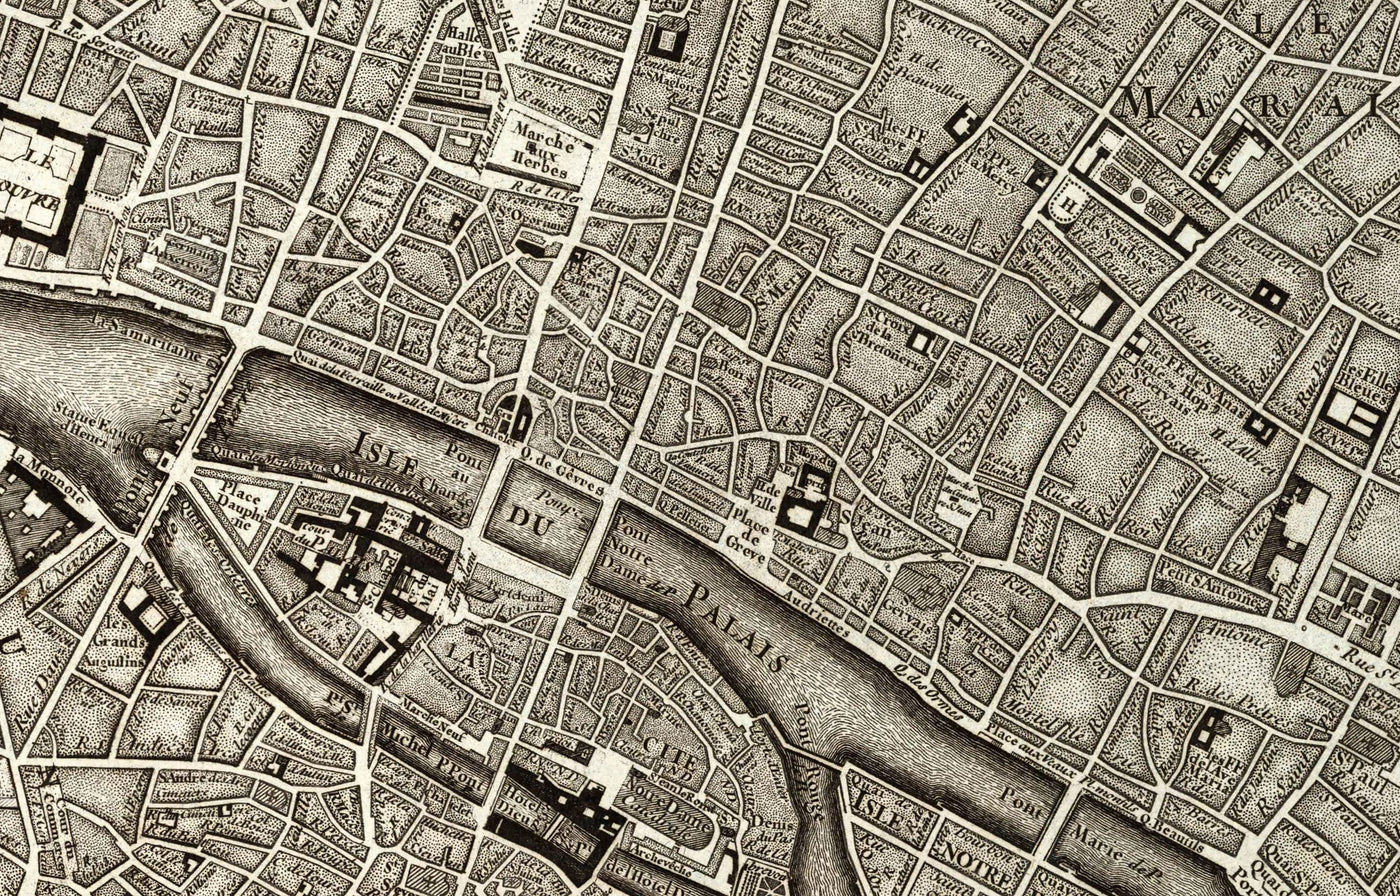 Rare ancienne carte de Paris, 1795 par Roussel - 18ème siècle Louvre, Les Invalides, Champs-Élysées